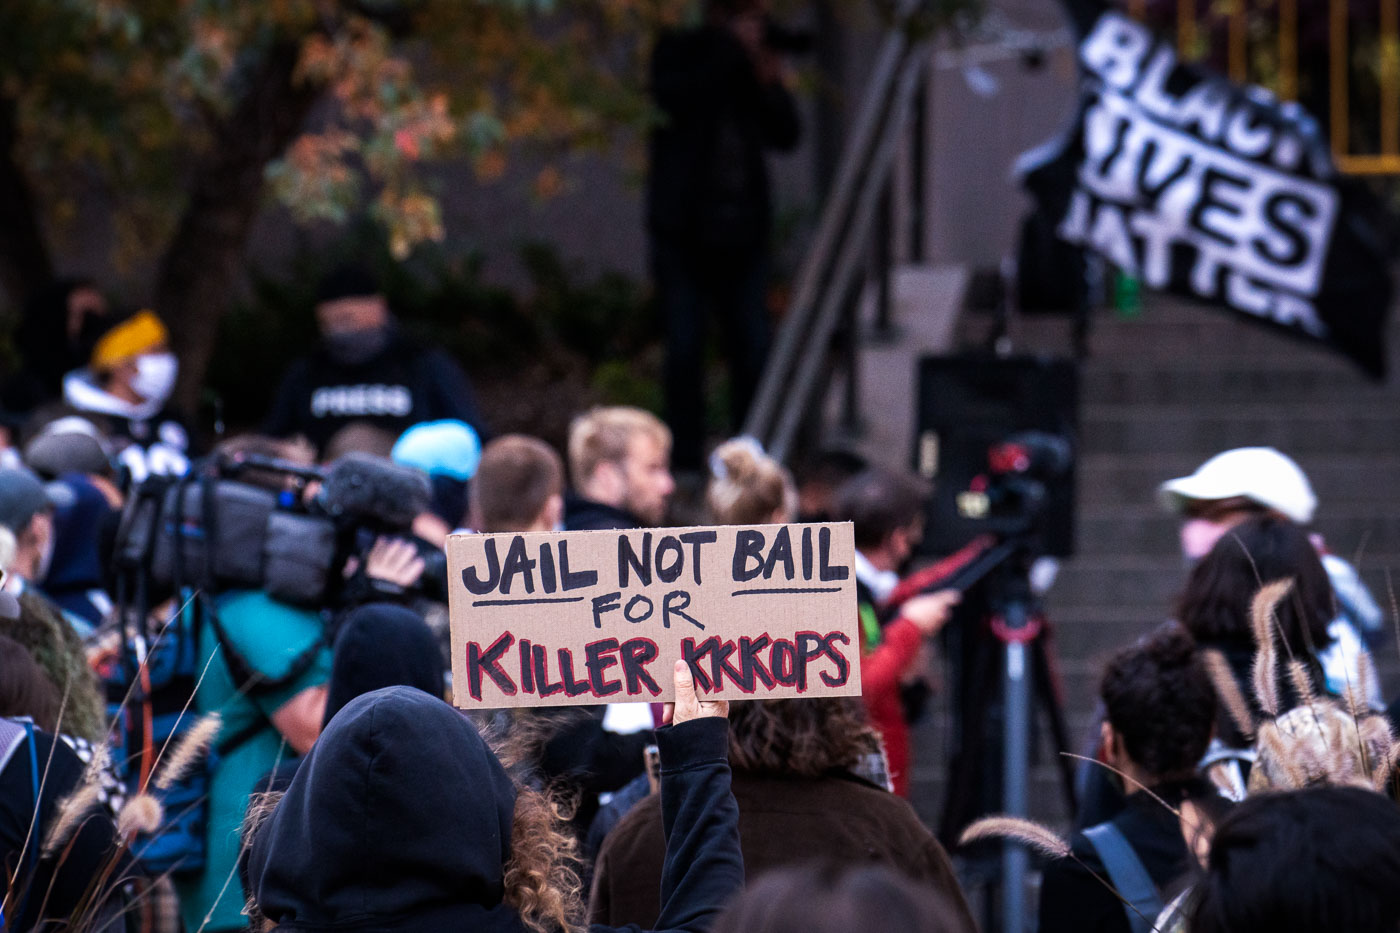 Jail not bail for killer kkkops